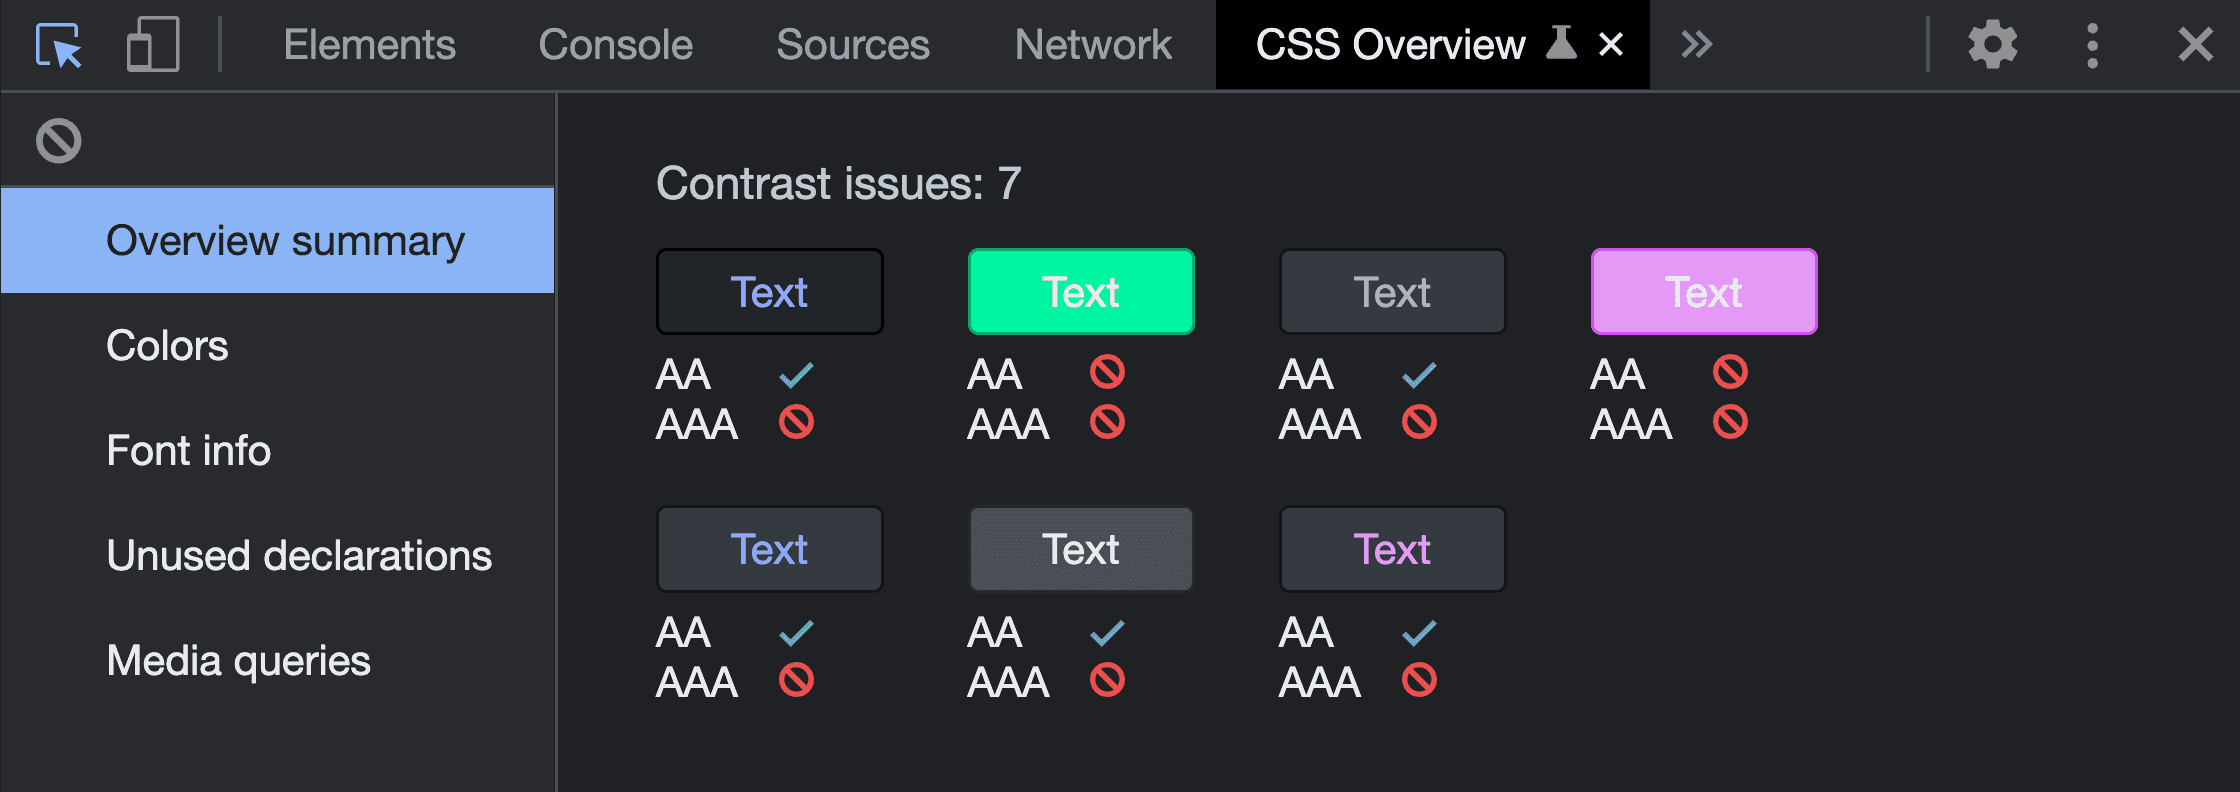 تصویری از خلاصه مرور کلی از اجرای ابزار CSS Overview capture. 7 مشکل کنتراست را نشان می دهد که جفت رنگ های کشف شده و نتایج ناموفق آنها را نشان می دهد.